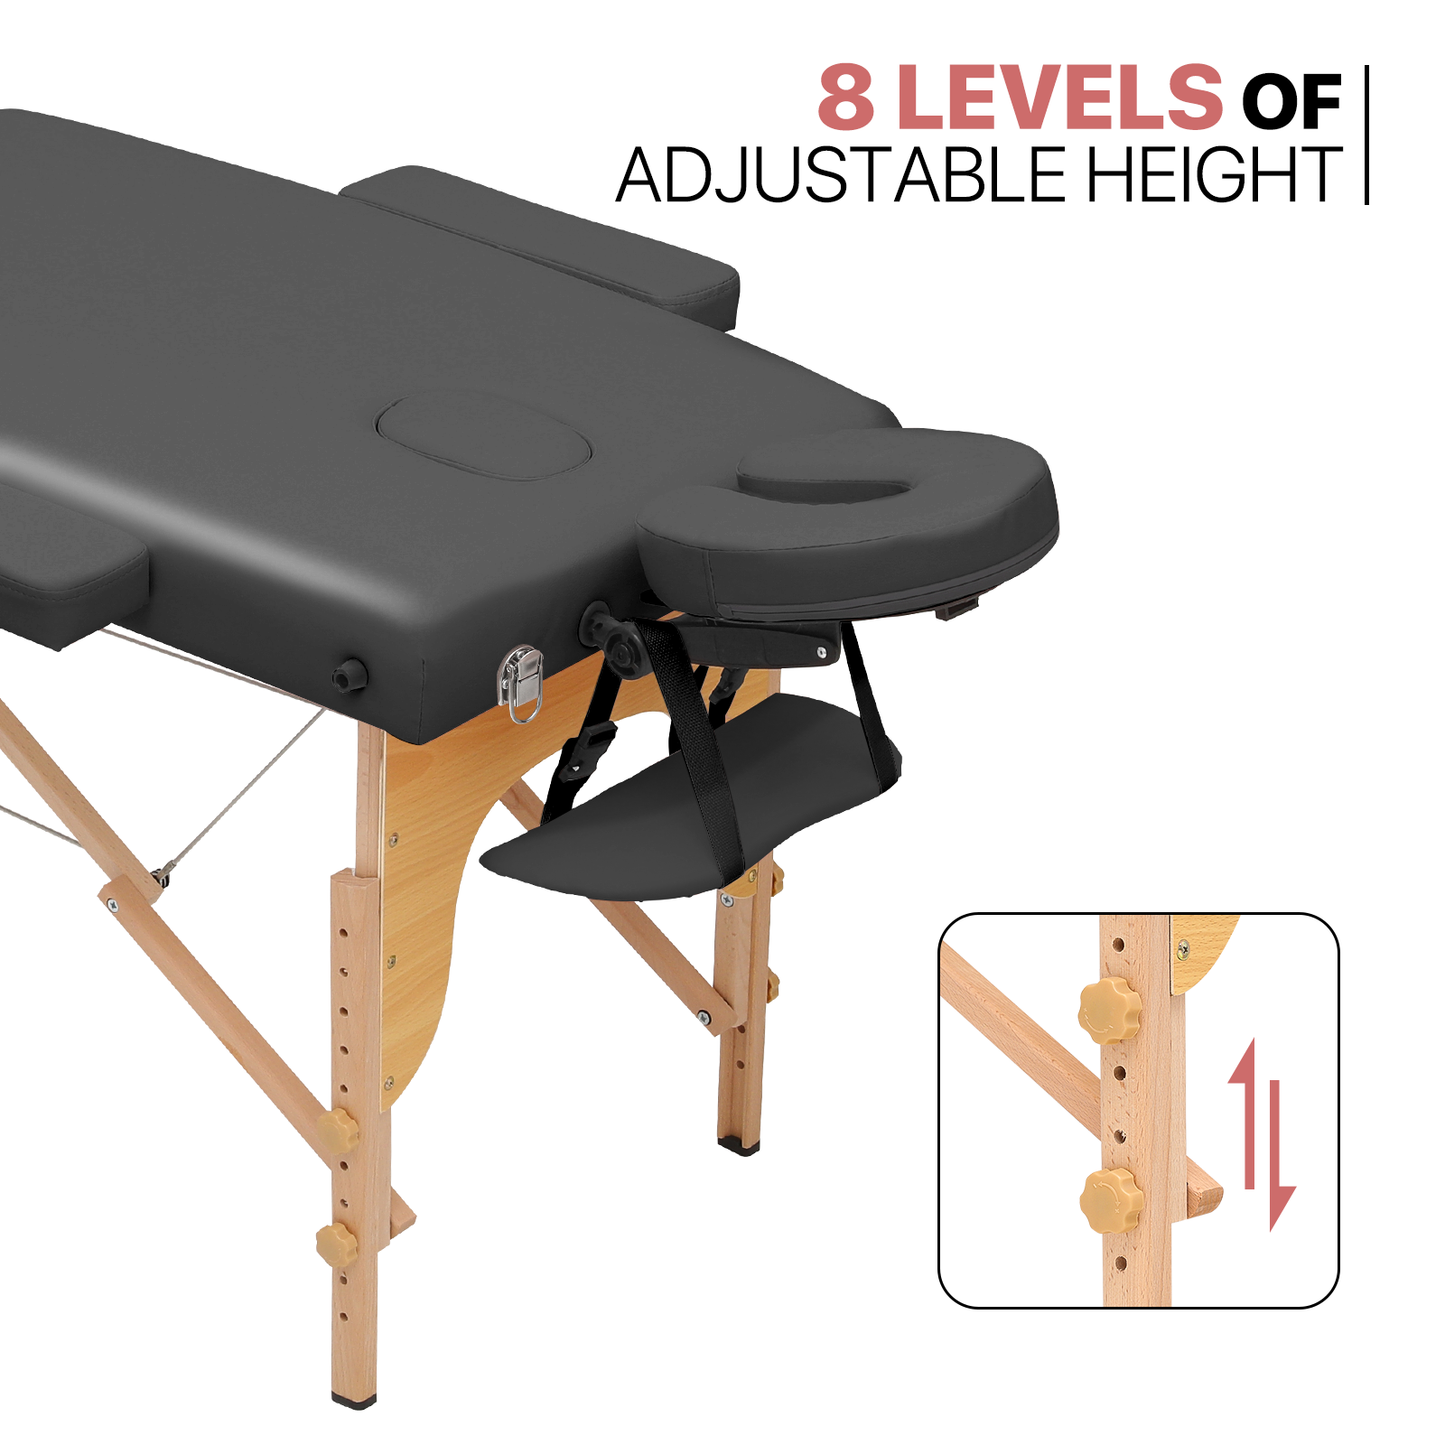 Portable Massage Table - Adjustable Height 24.5" to 33.5" - Tilt Back - Wooden Frame